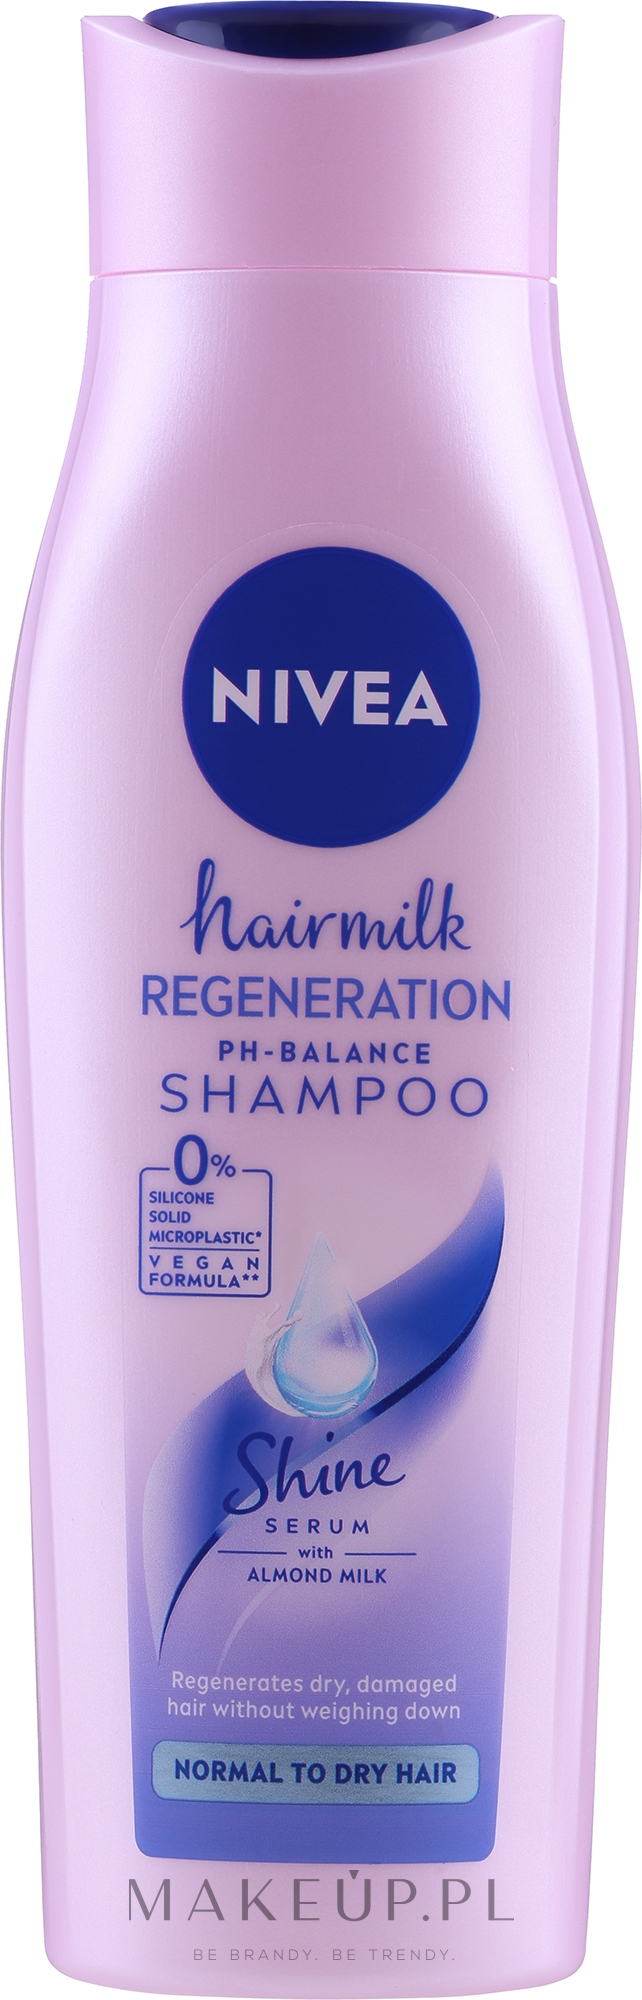 szampon nivea do włosów normalnych wizaz